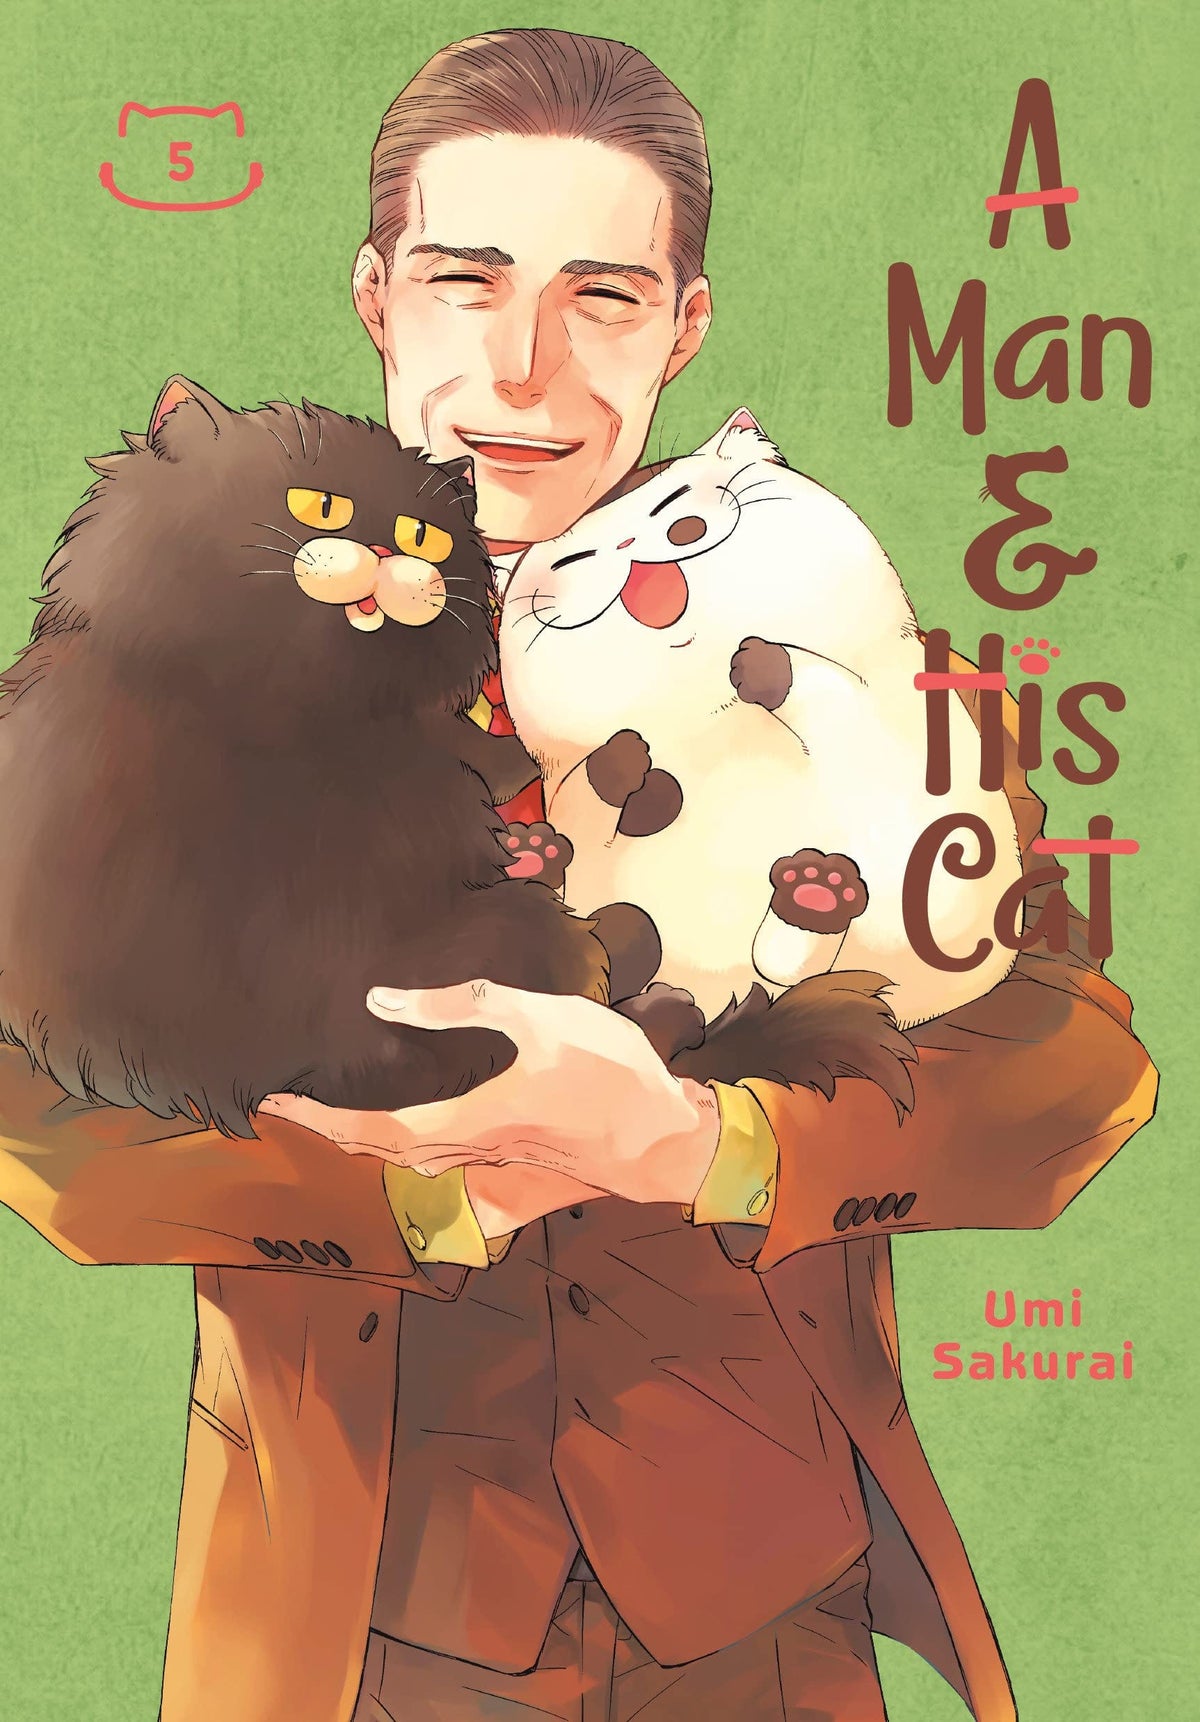 Man & His Cat Vol. 5 - Third Eye